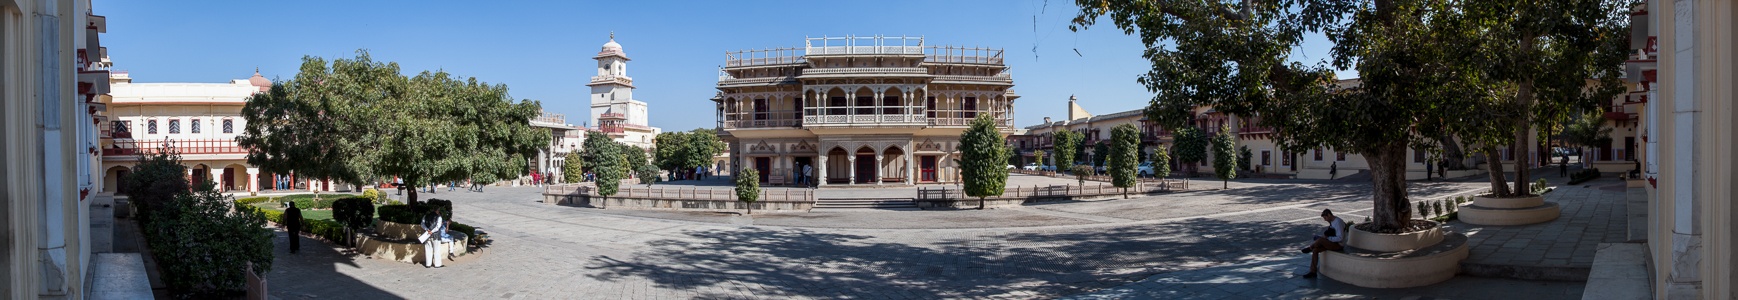 Jaipur City Palace Museum